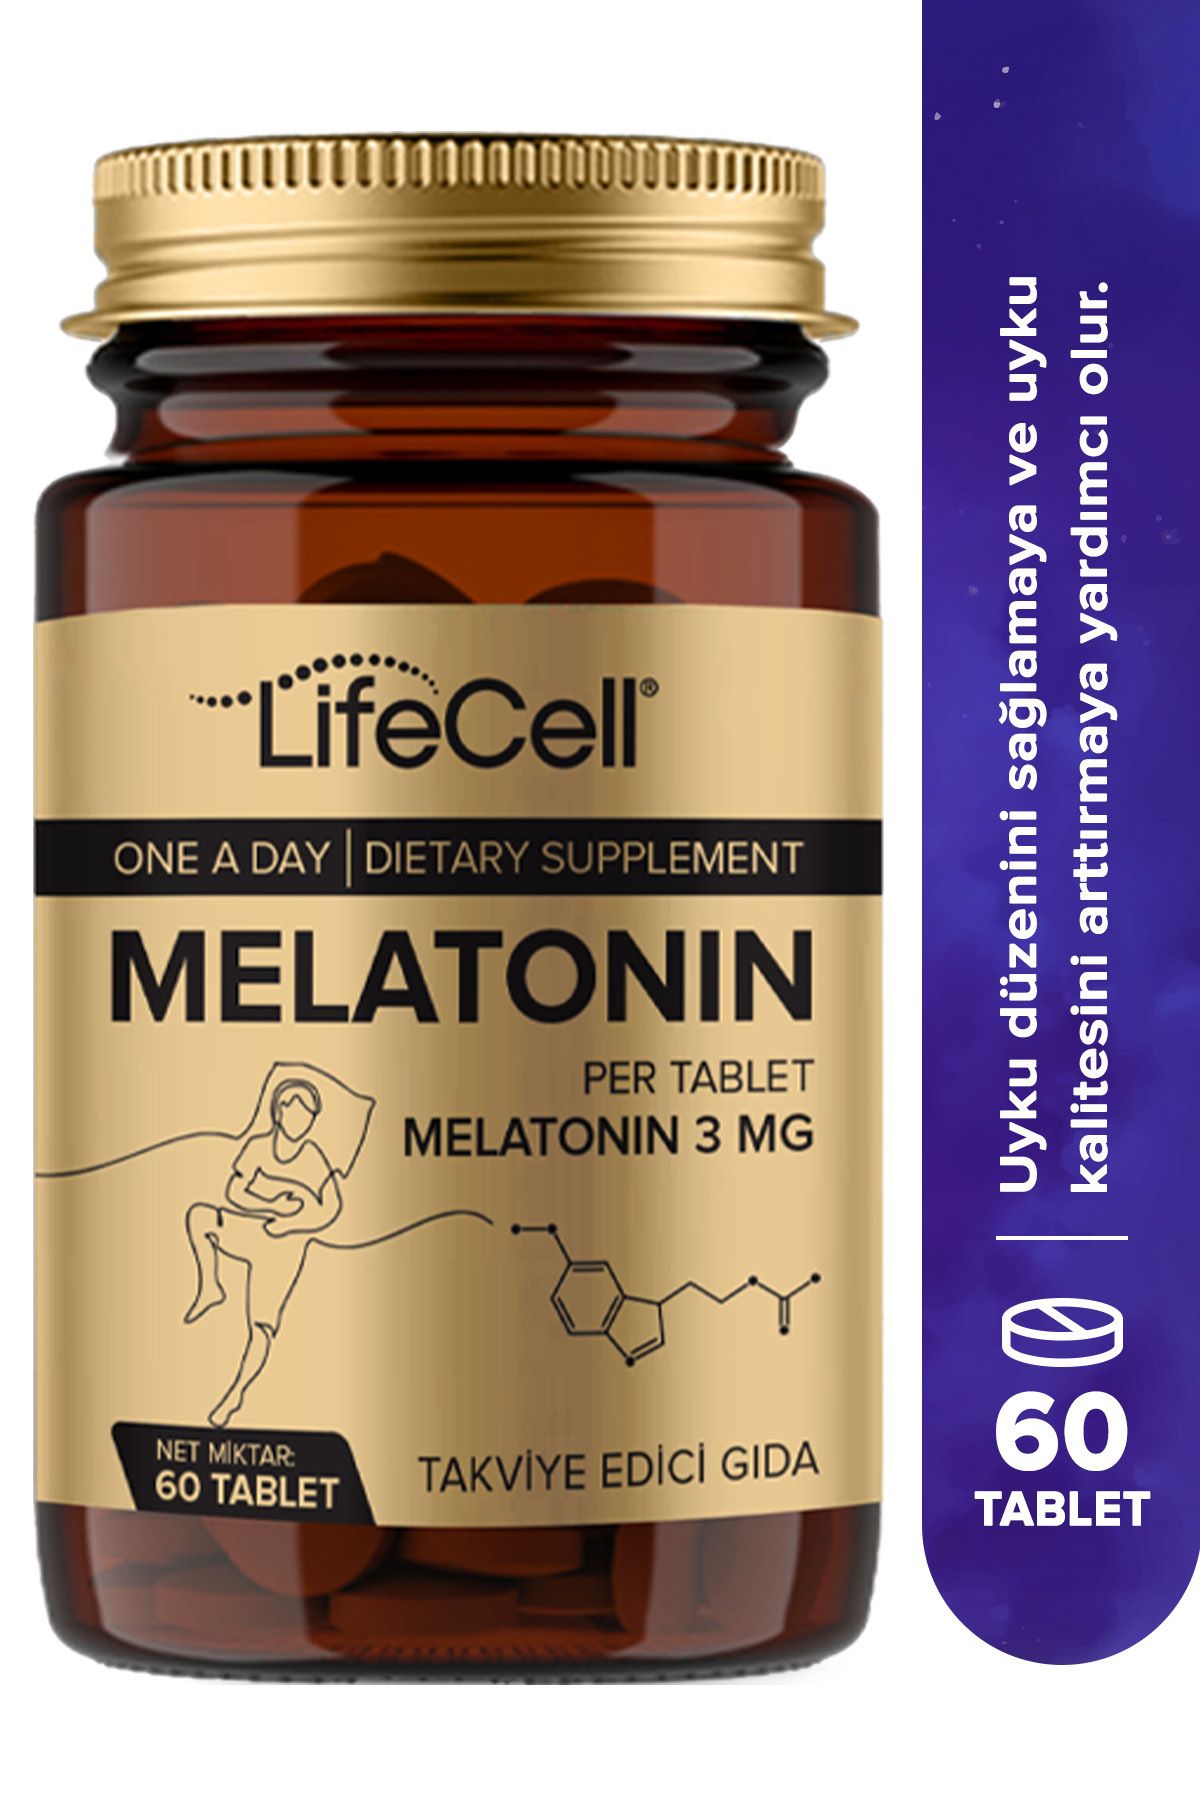 Lifecell Melatonin 3 Mg - 60 Tablet Kaliteli Ve Derin Uyku Için Doğal Gıda Takviyesi